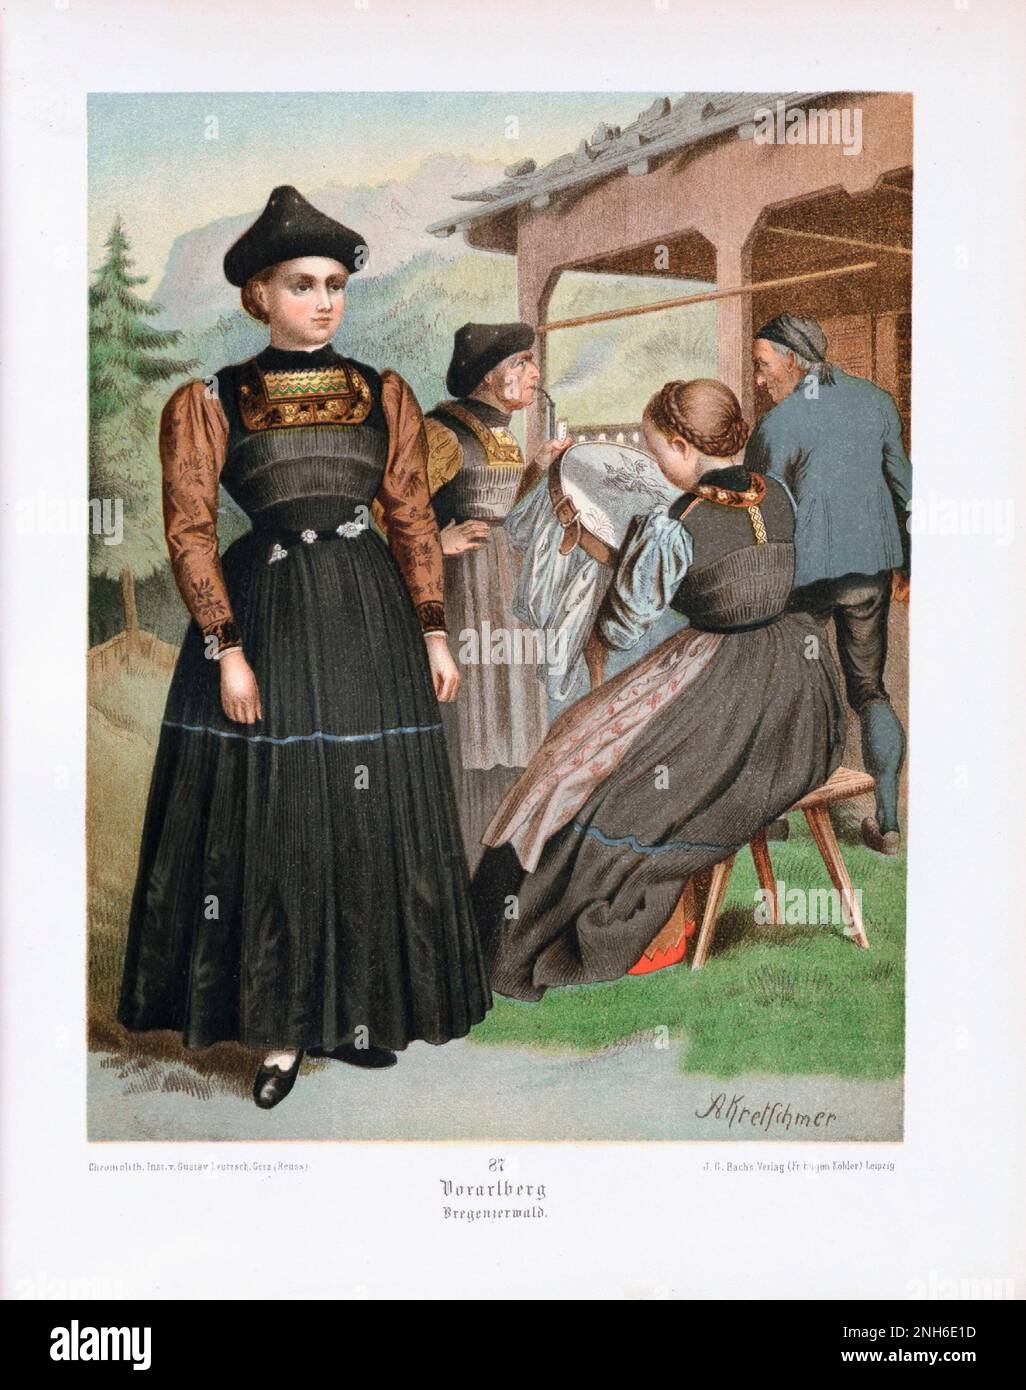 Costume folklorique allemand. Vorarlberg (État le plus à l'ouest (pays) de l'Autriche), Bregenzerwald. lithographie de 19th-siècle. Banque D'Images